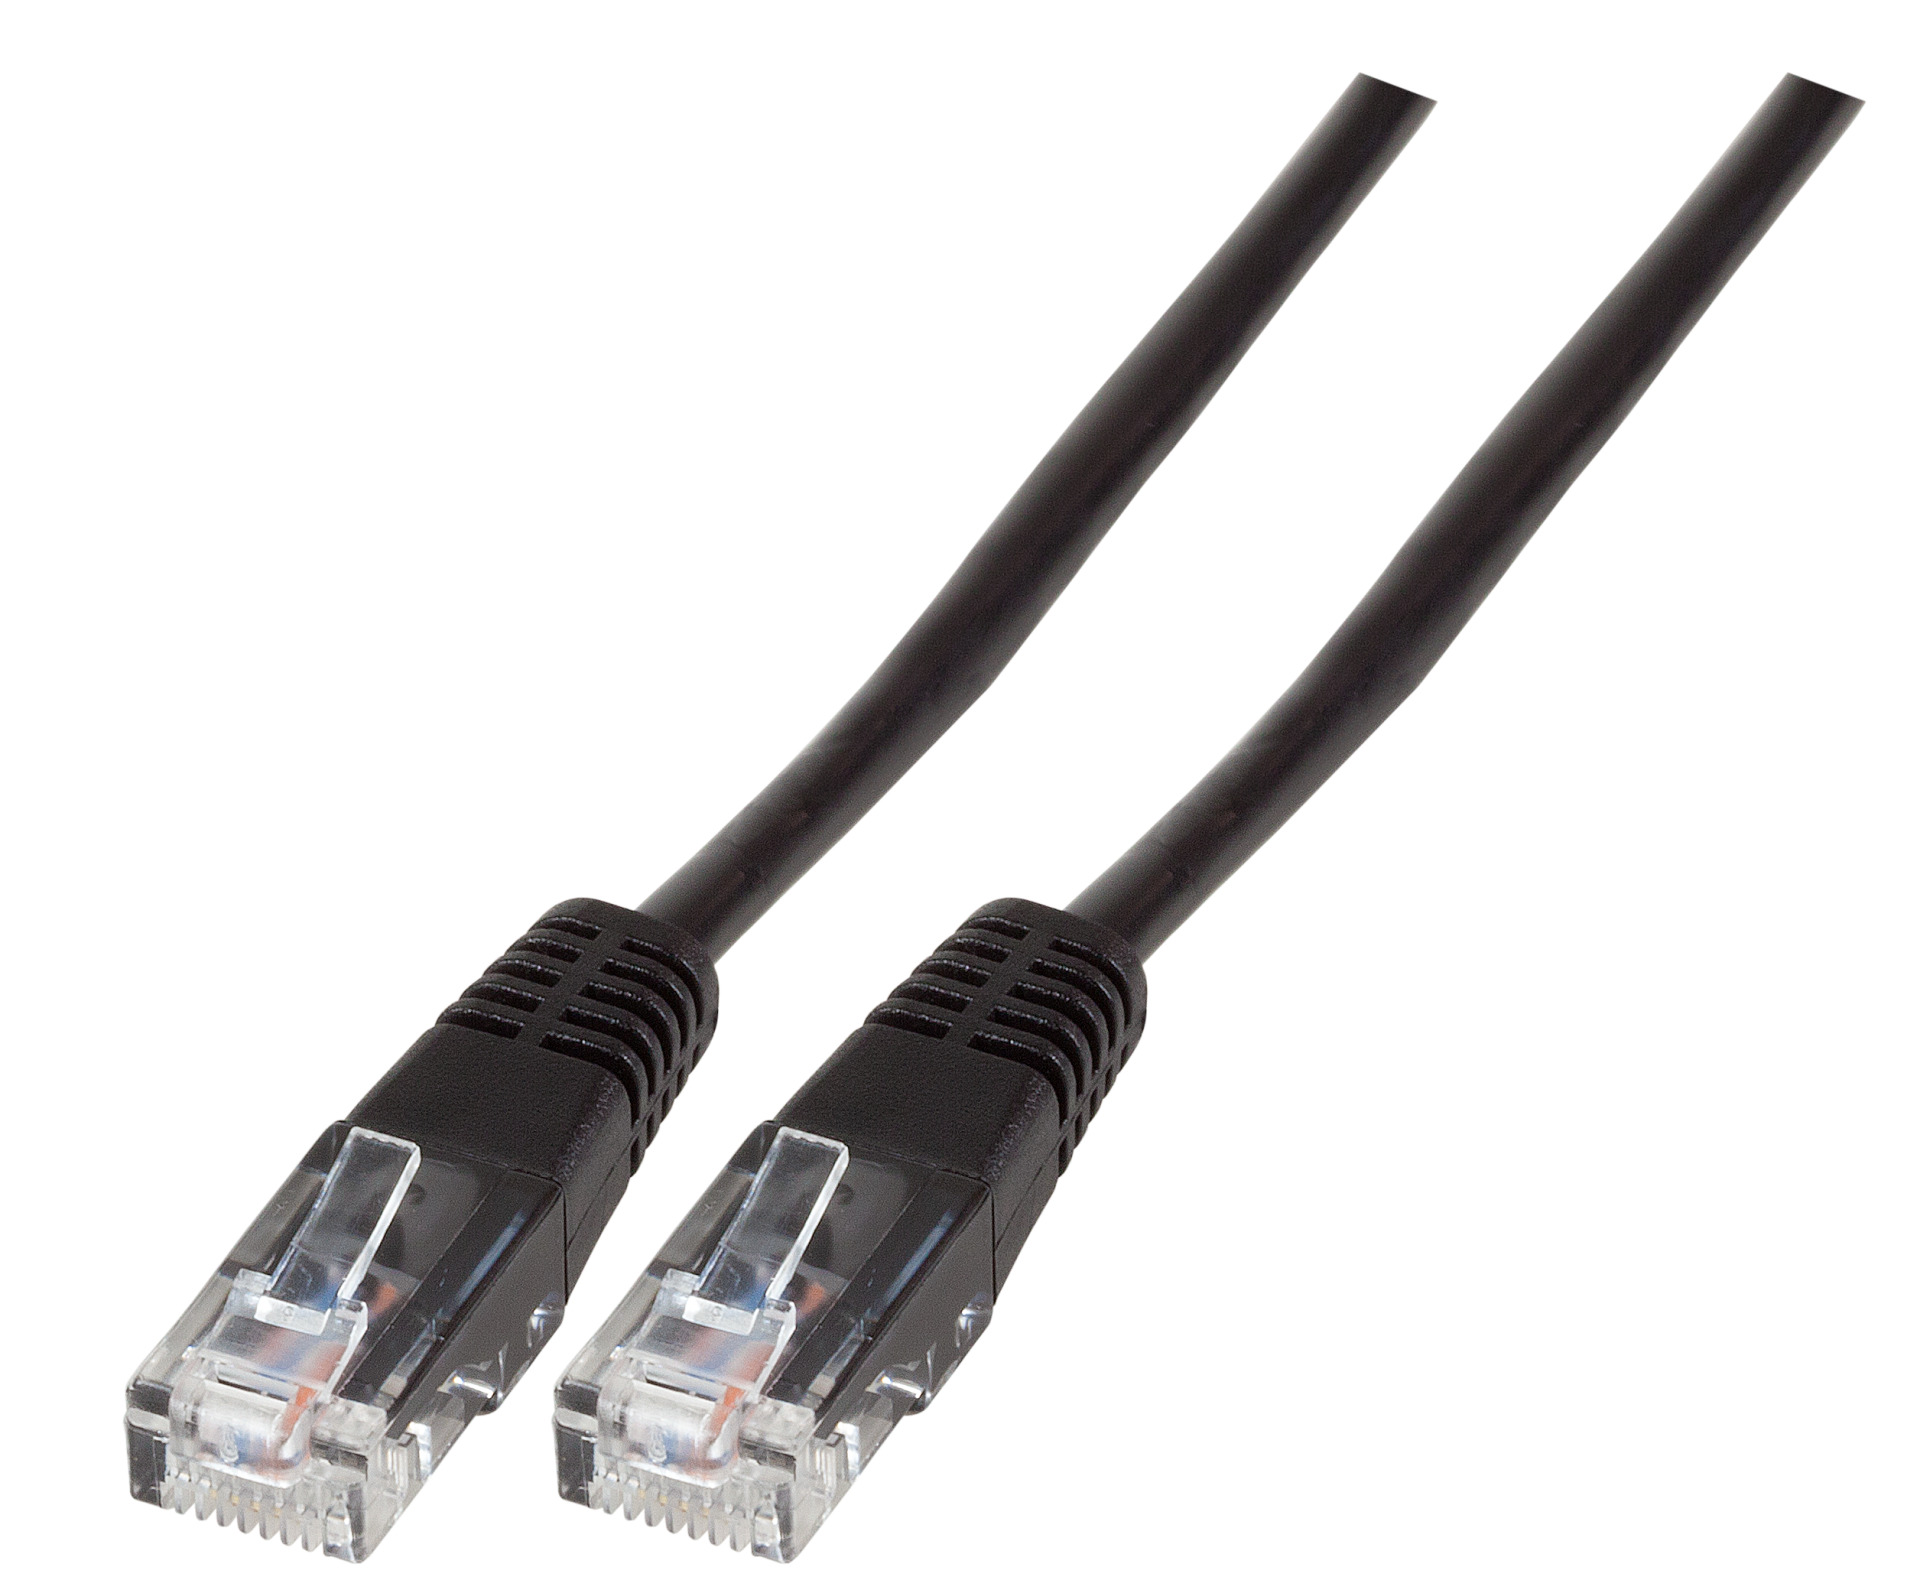 Modular Cable RJ45 (8/4) - RJ45 (8/4), Moulded, Black, 1.5 m